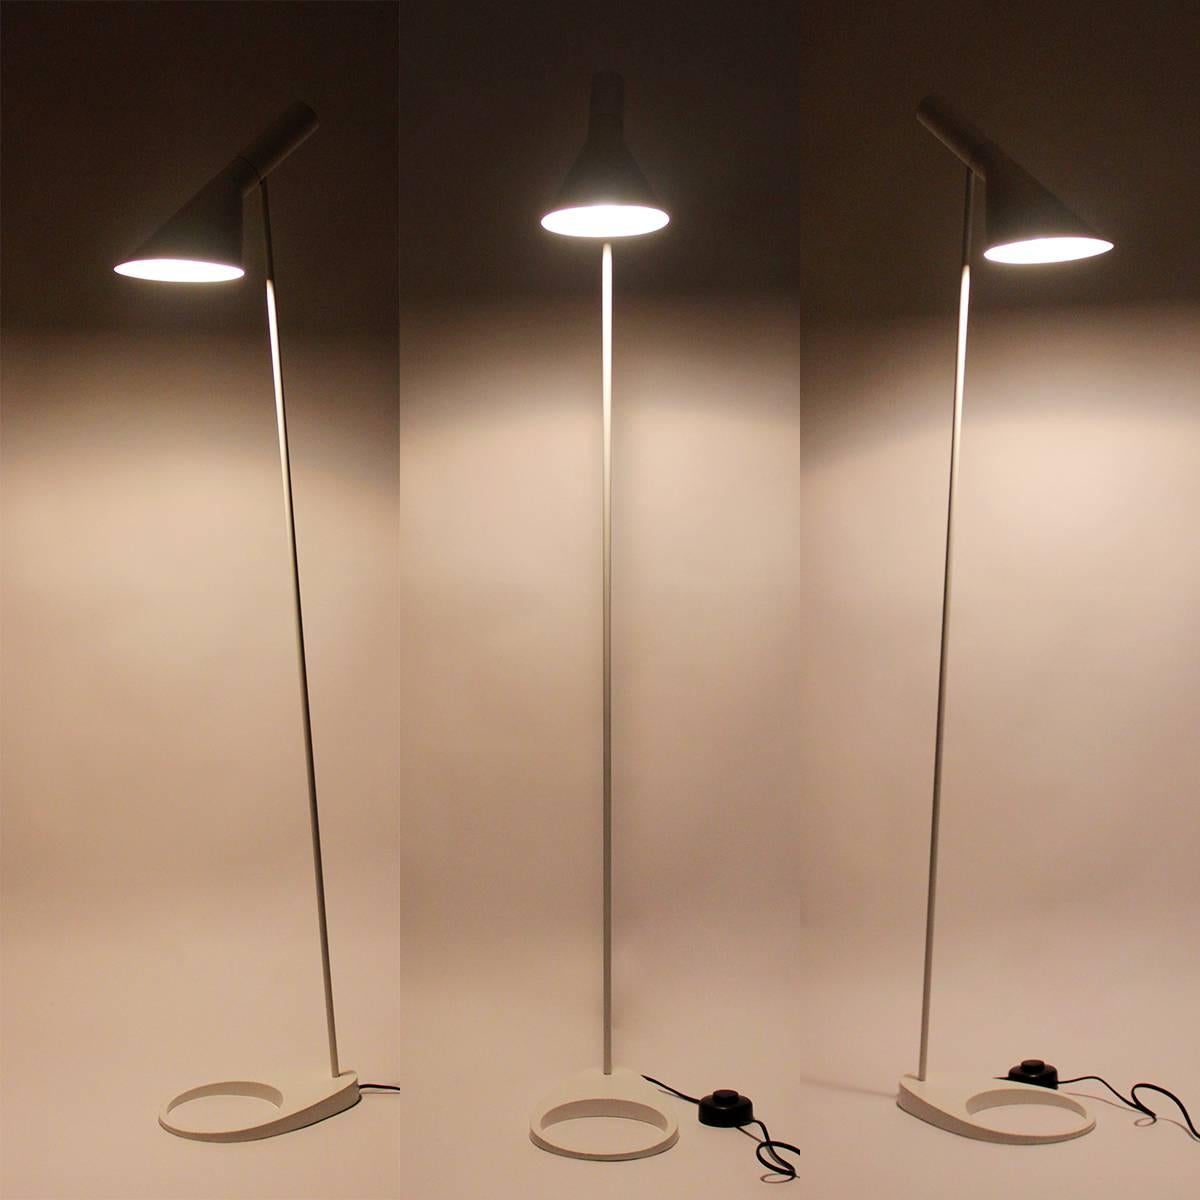 Danish AJ Floor Lamp, Arne Jacobsen, Louis Poulsen, 1957. the Classic White Floor Light For Sale